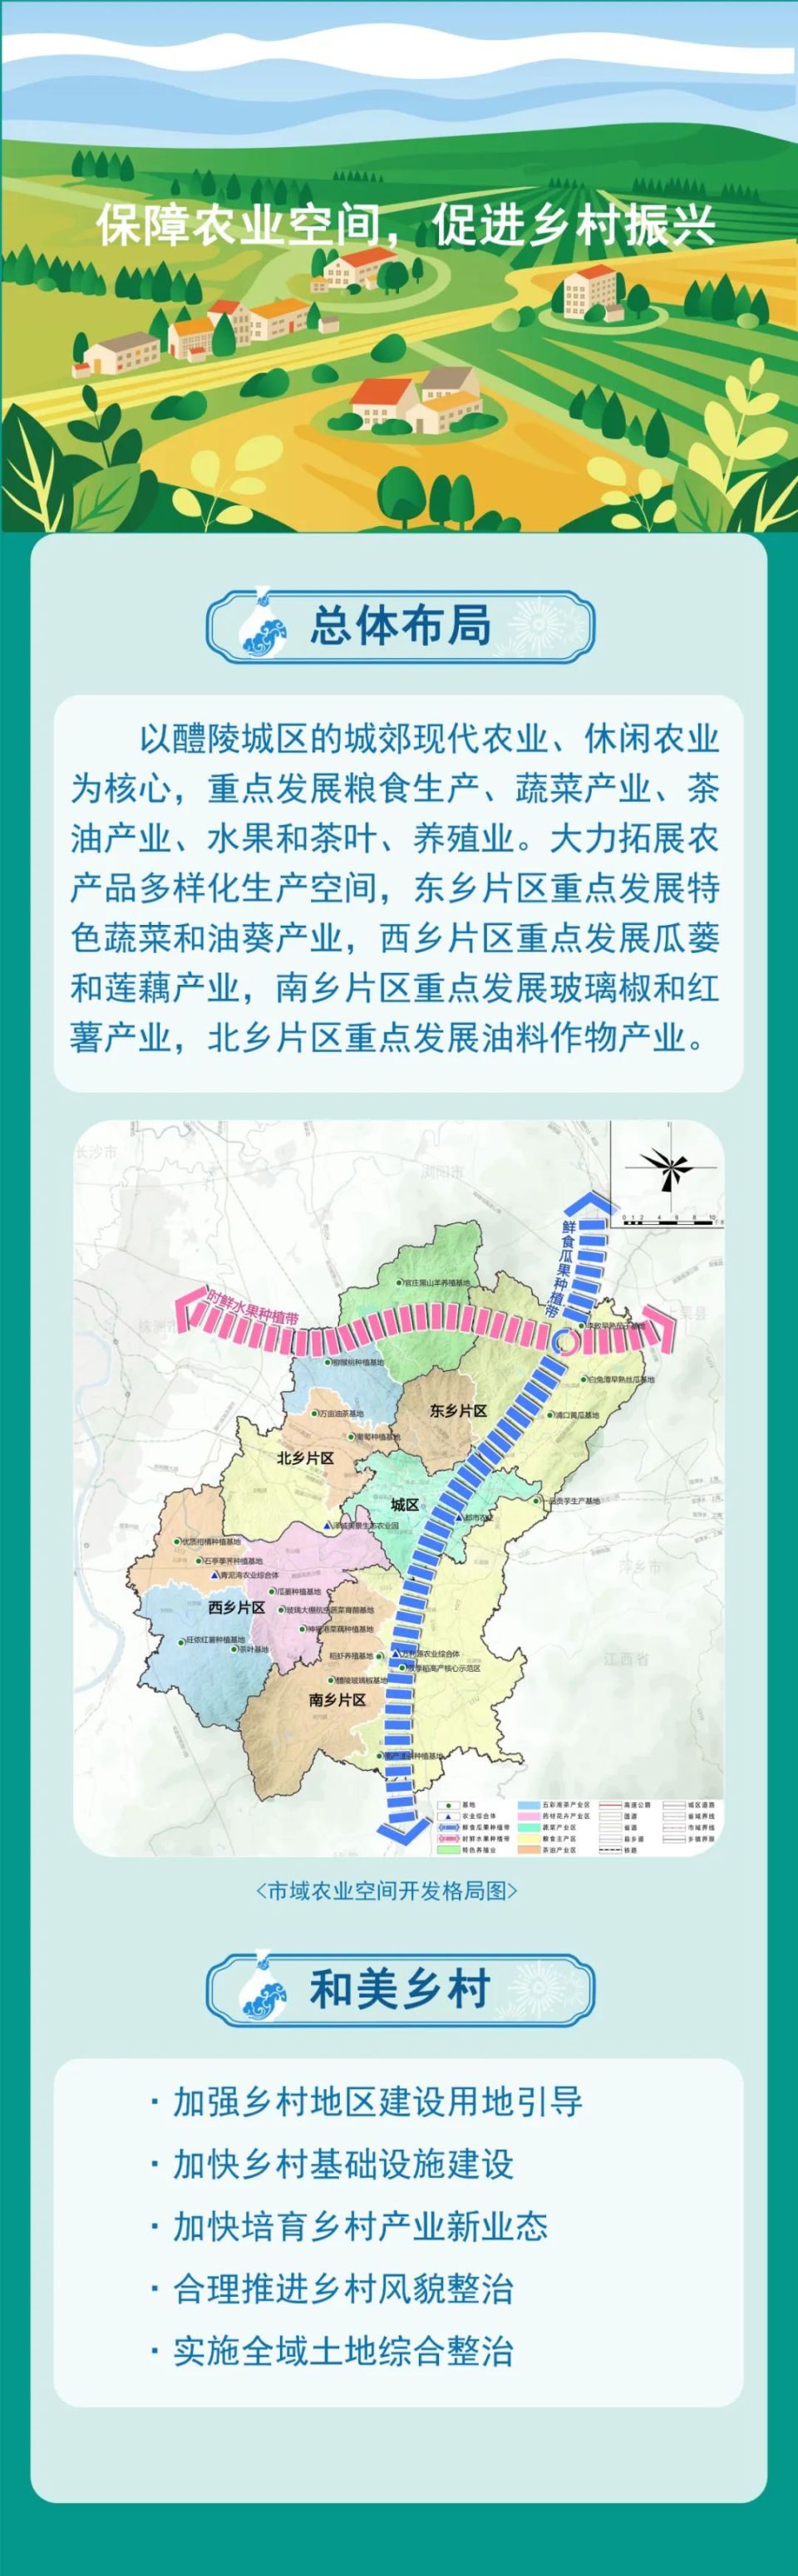 一图读懂丨醴陵市国土空间总体规划